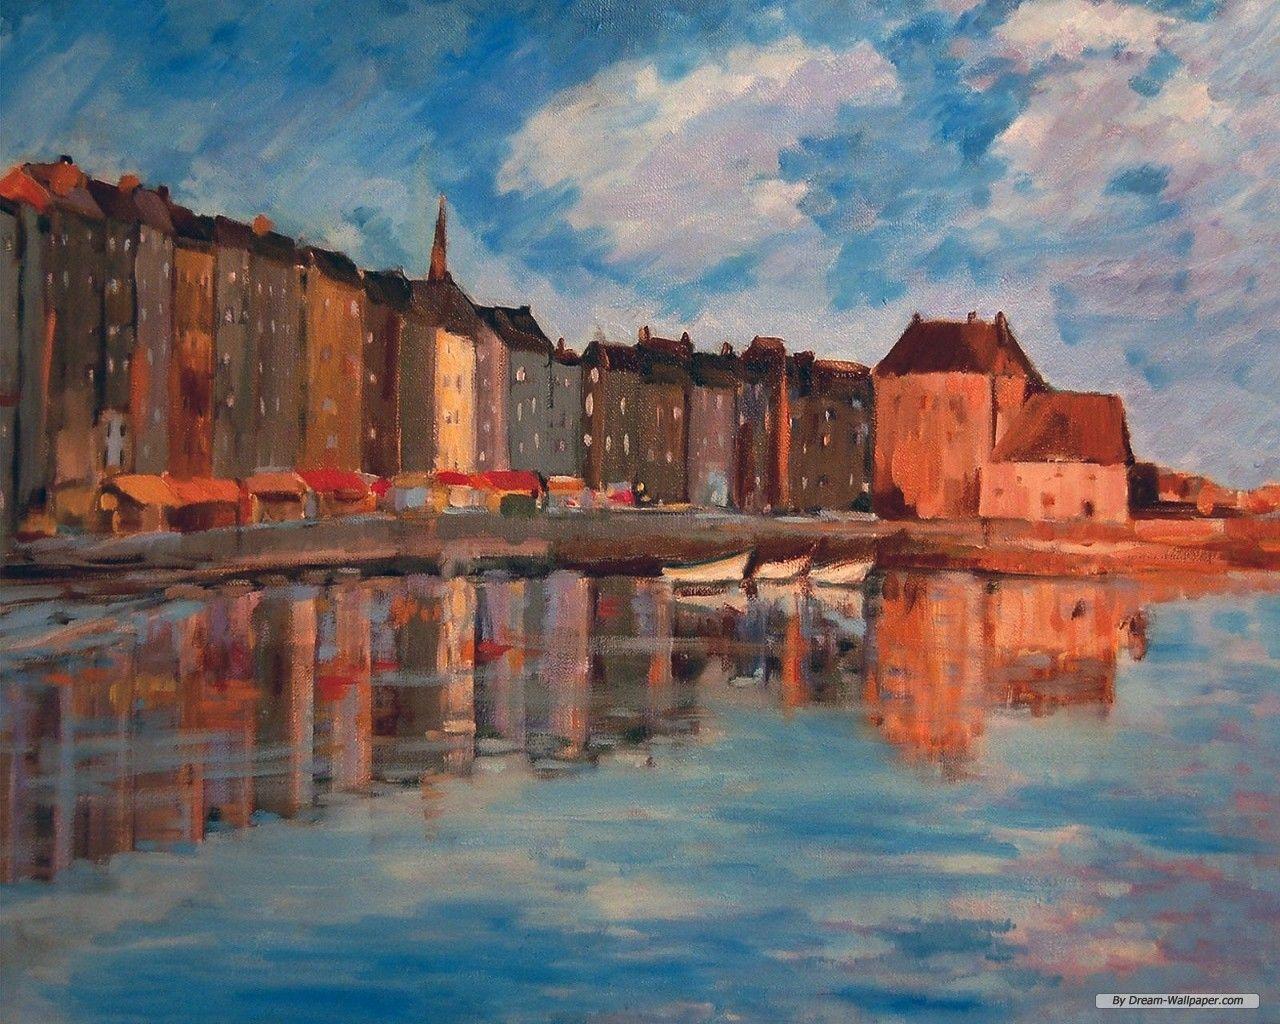 1280x1024 Hình nền miễn phí - Hình nền nghệ thuật miễn phí - Hình nền Claude Monet